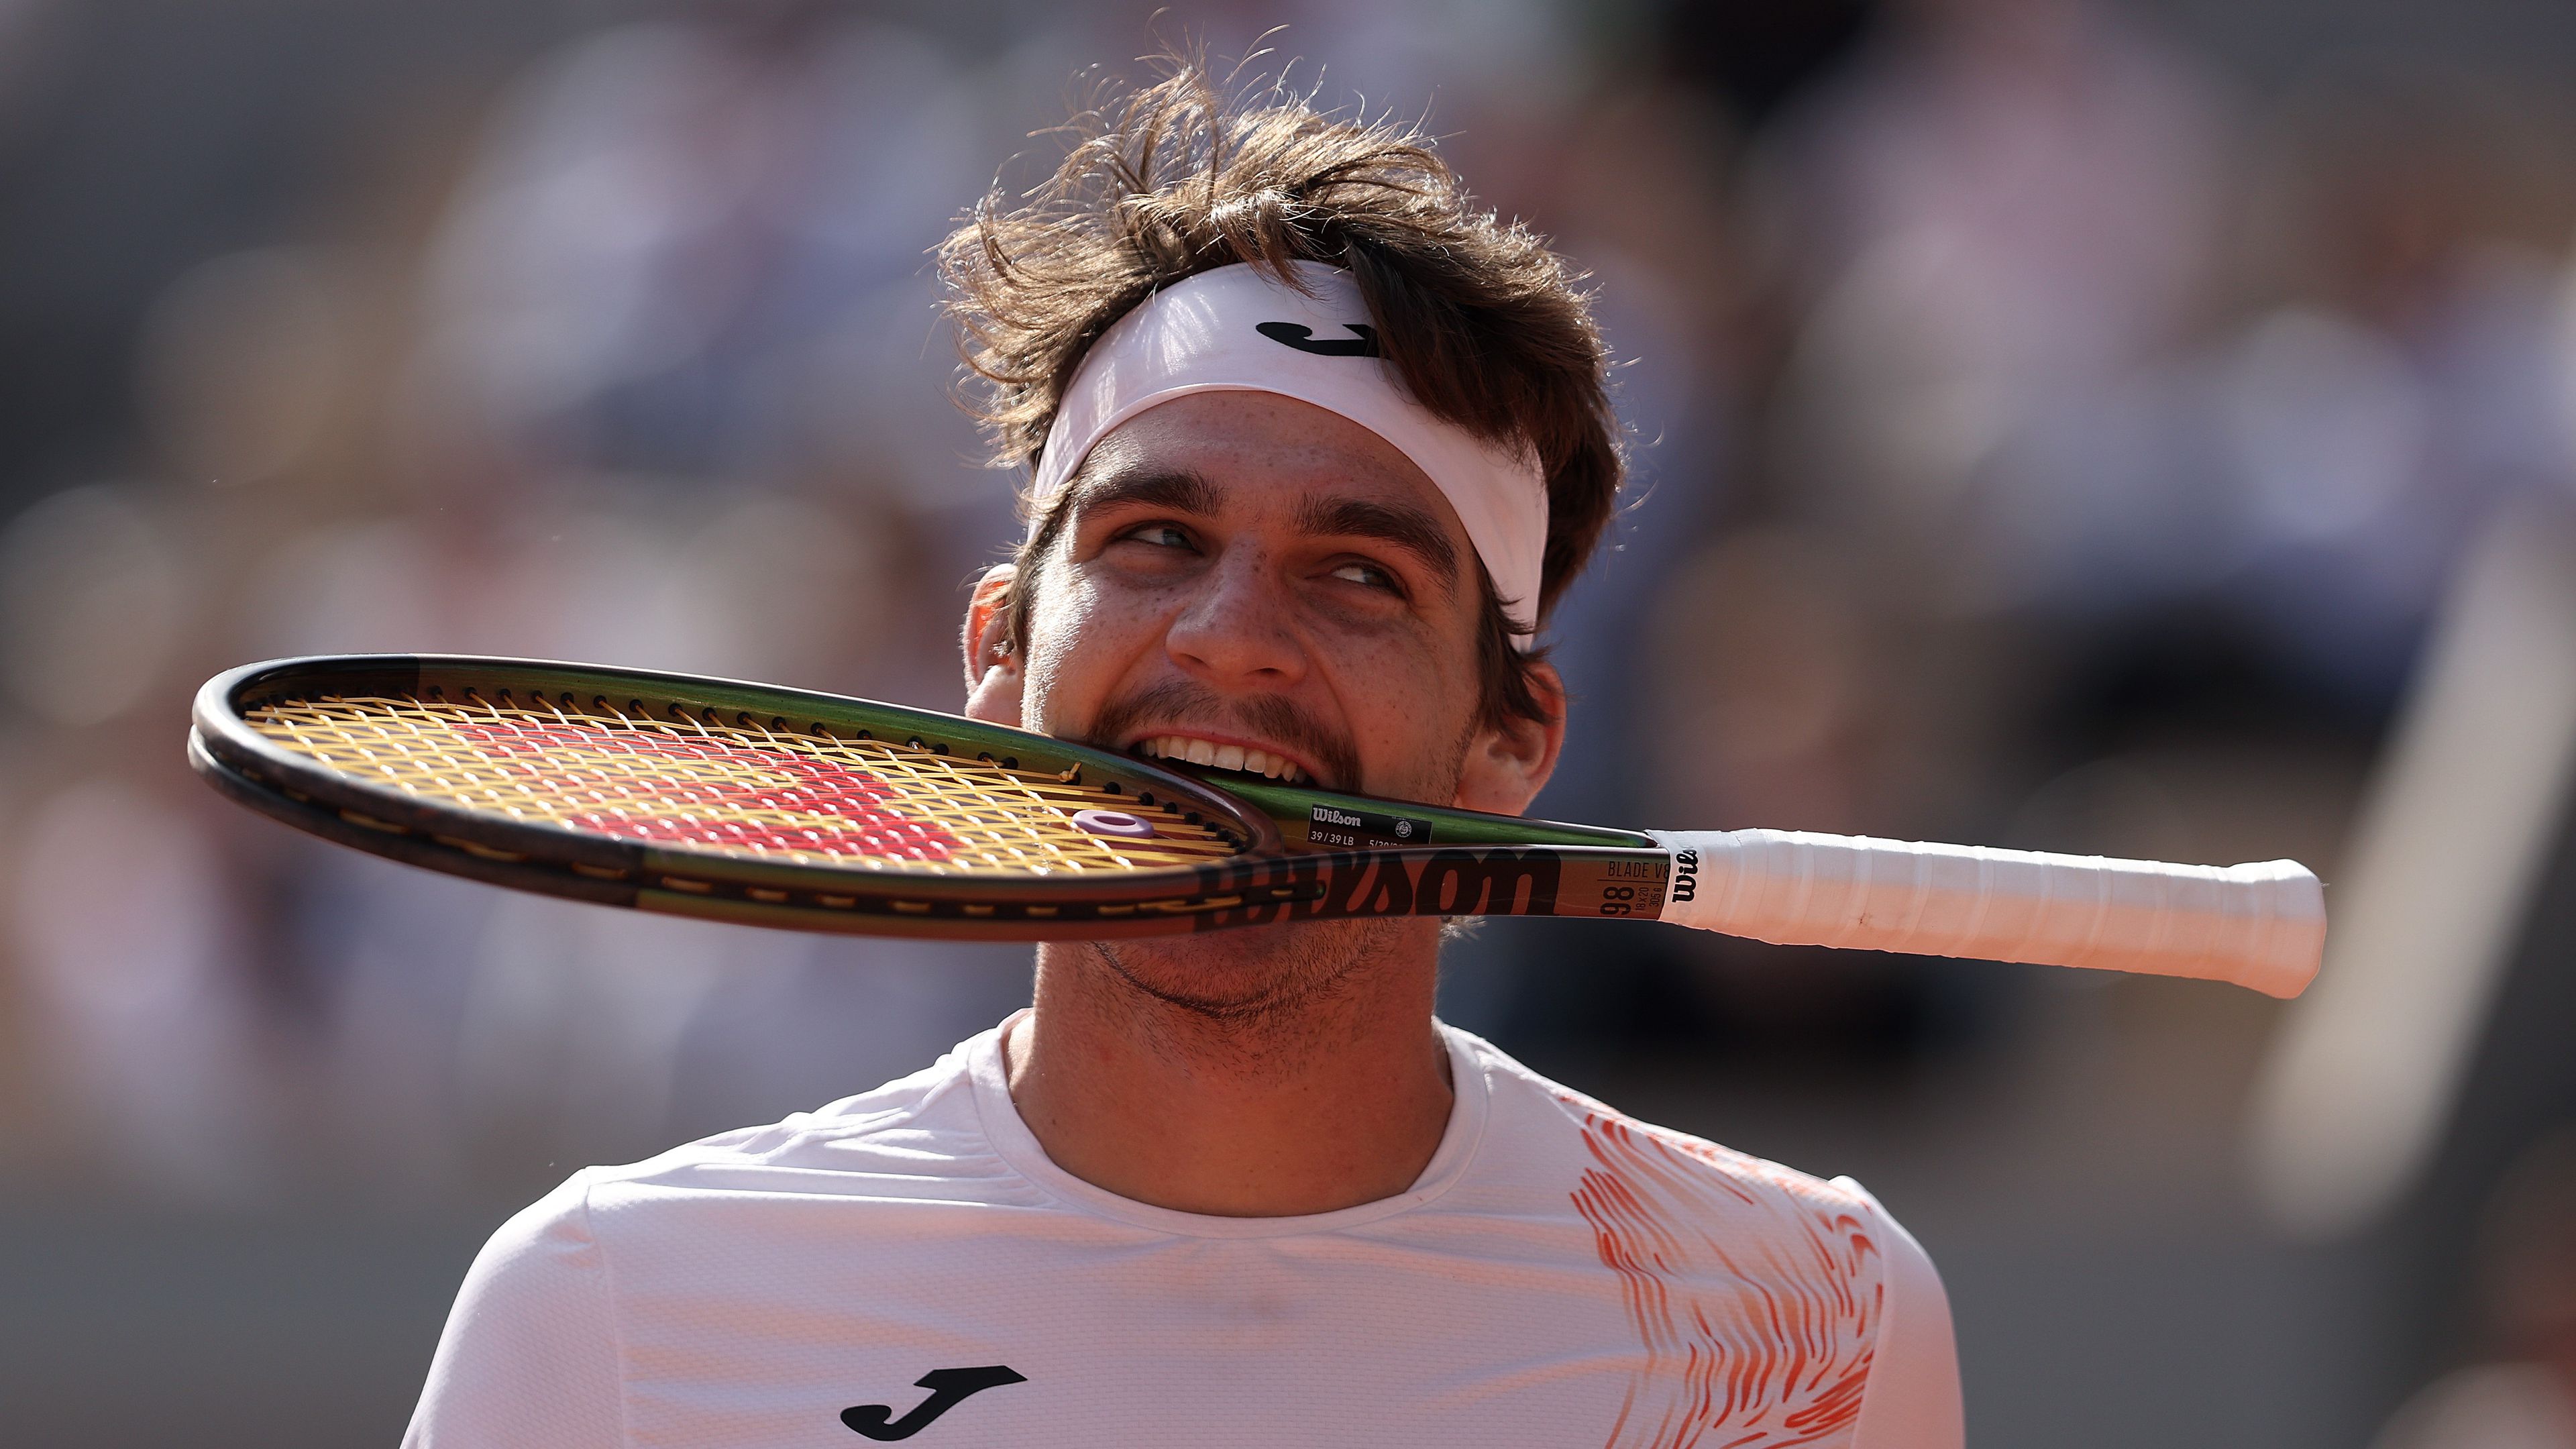 Szenzáció a Roland Garroson: a világranglista 172. helyezettje megverte a Grand Slam-bajnokot